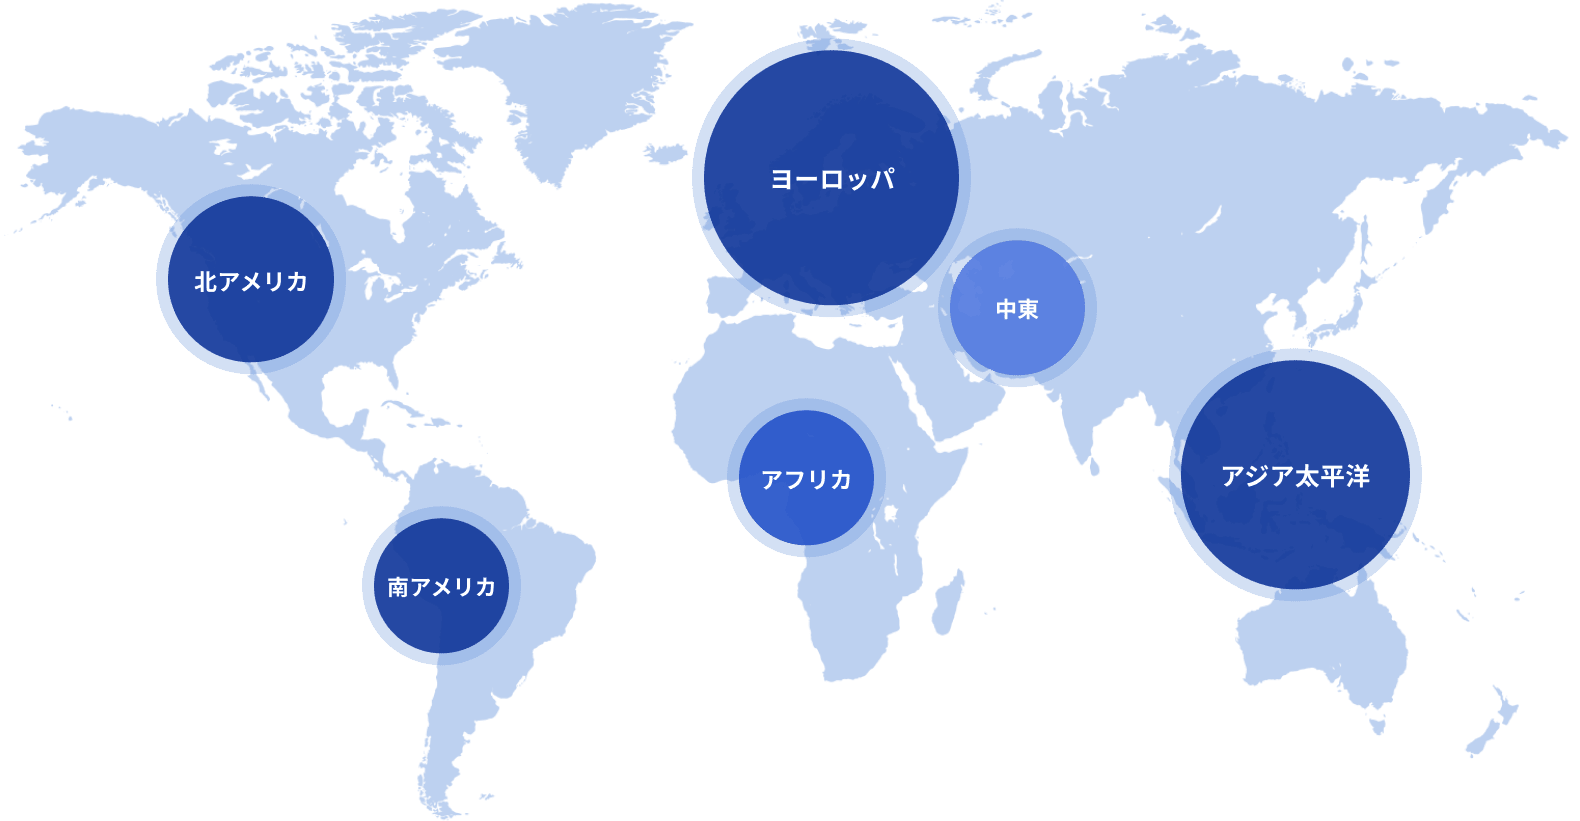 クレストン・グローバルの各国拠点のスケール図